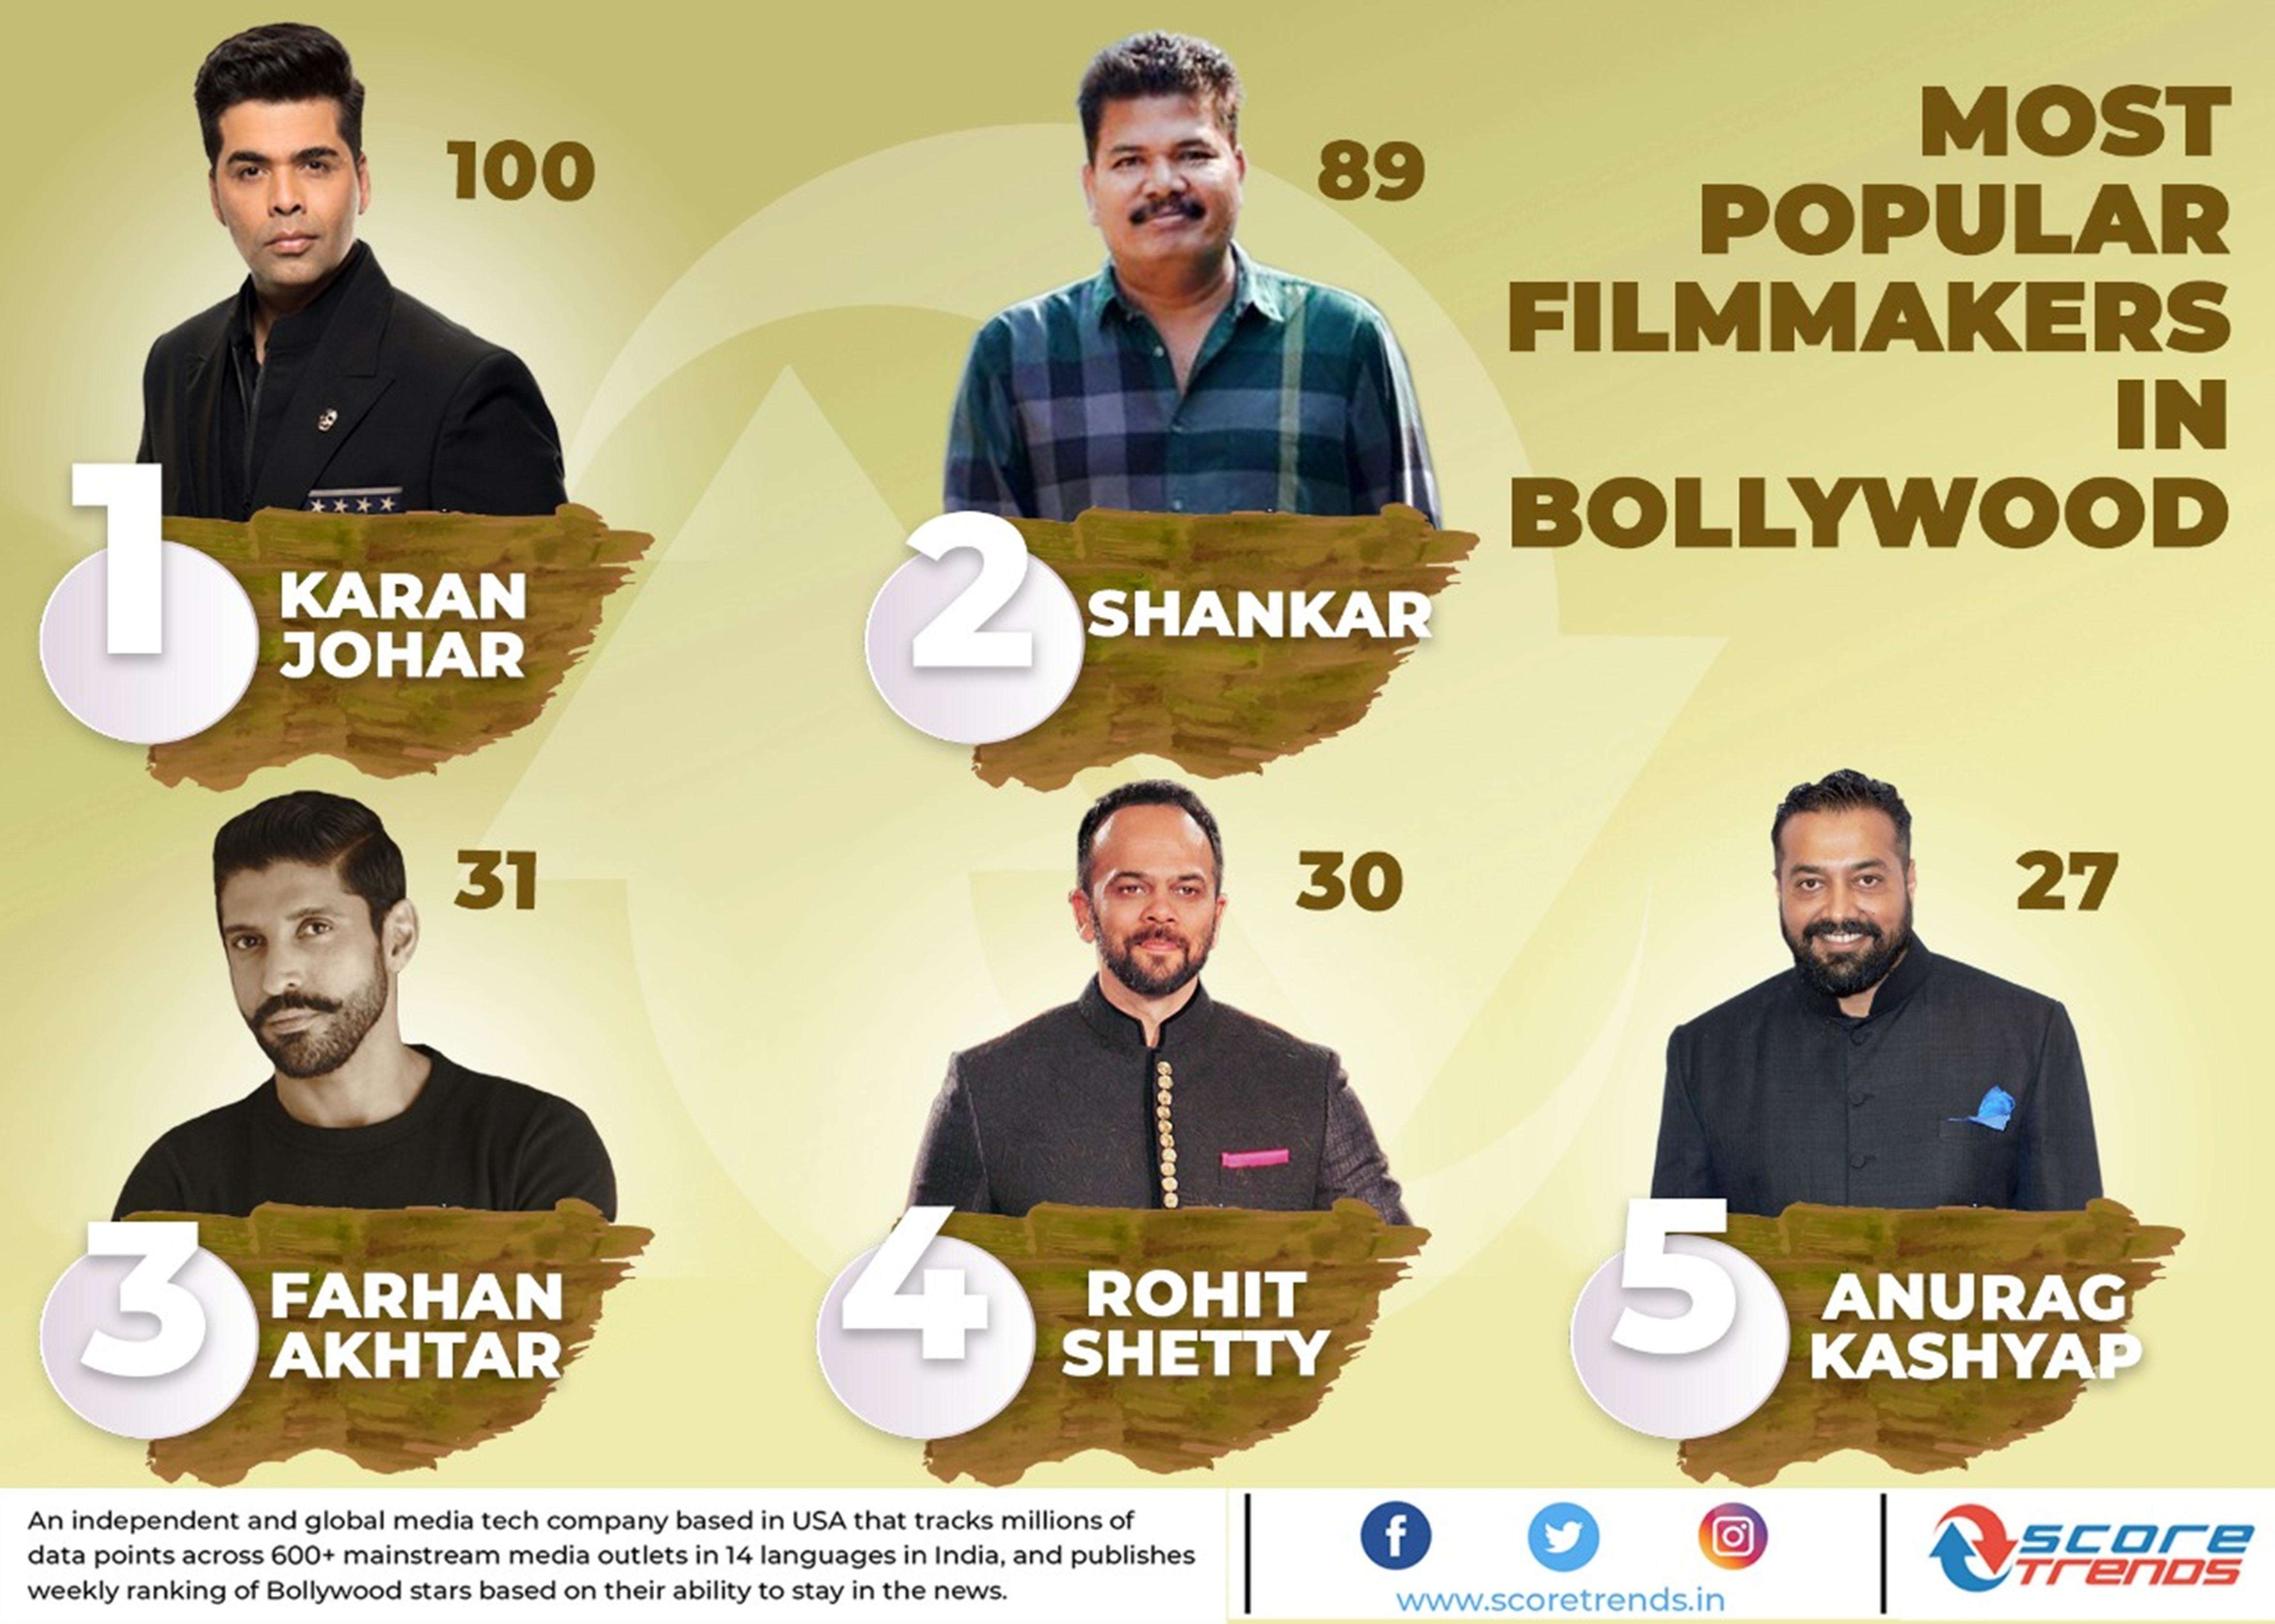 Indian filmmaker Karan Johar became the most popular Film maker of 2019!